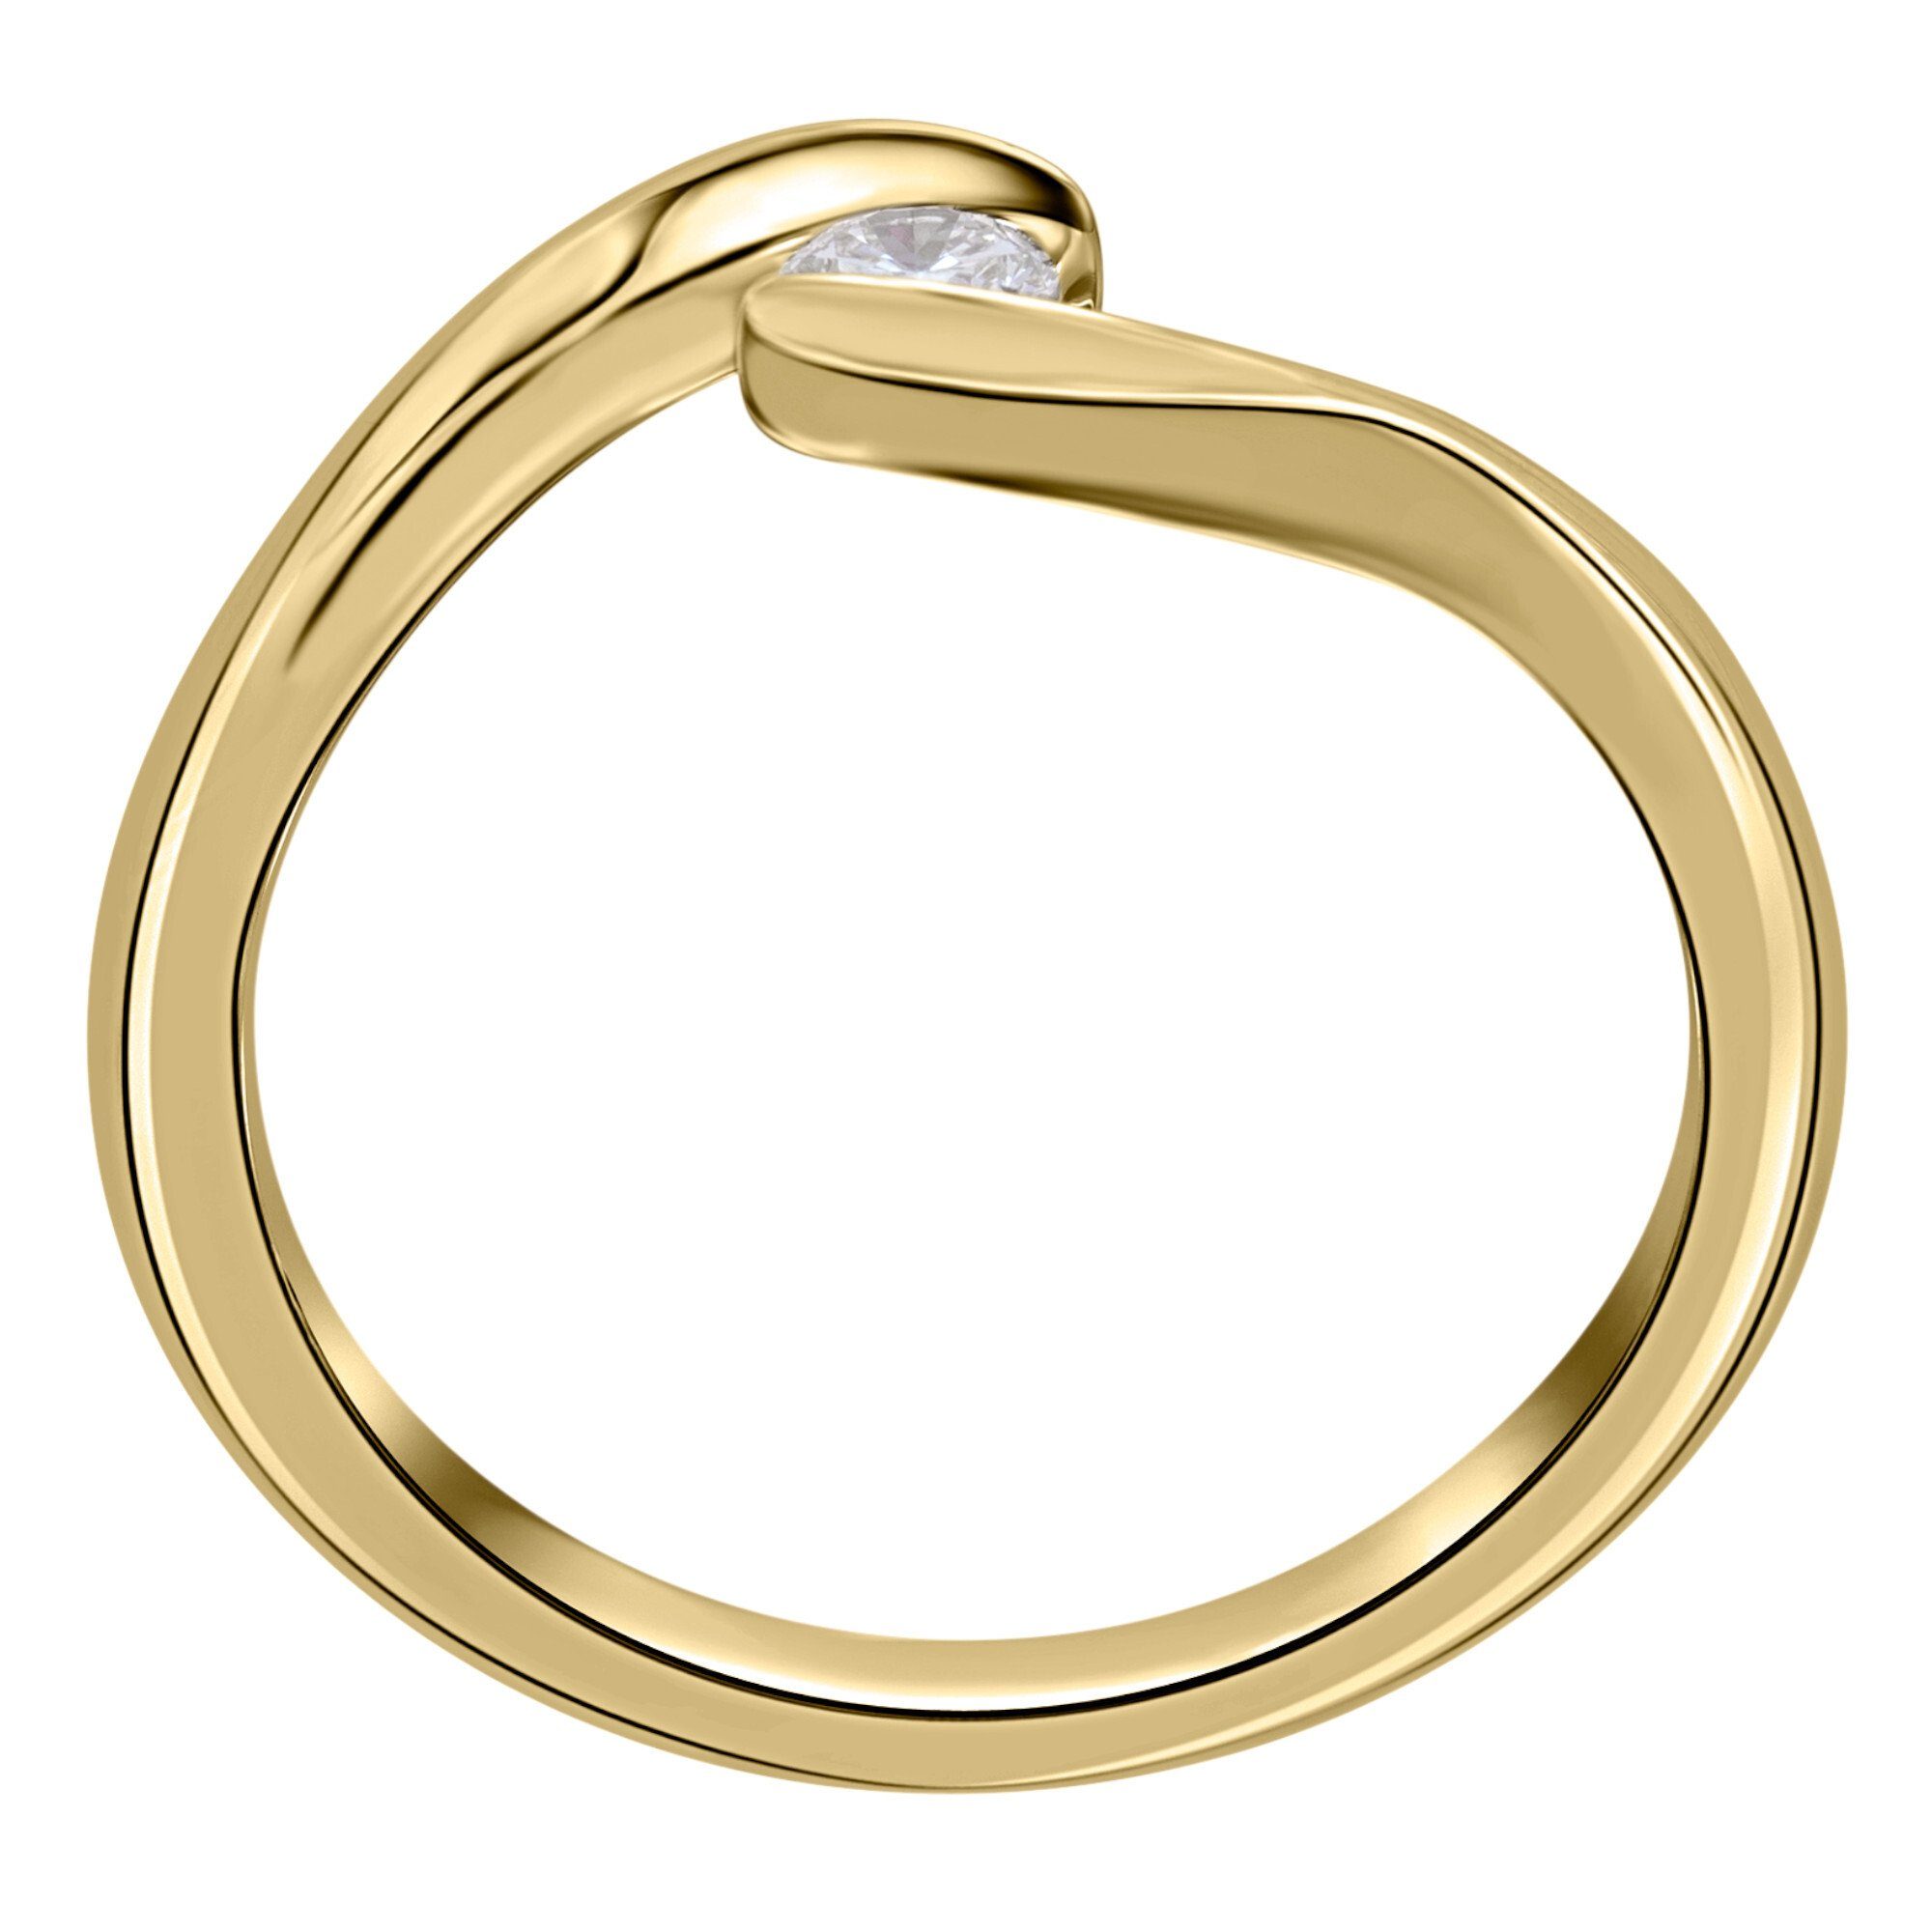 Spannfassung Diamant aus Brillant 750 Damen Spannfassung ONE ELEMENT Schmuck Gelbgold, Diamantring Gold Ring ct 0,05